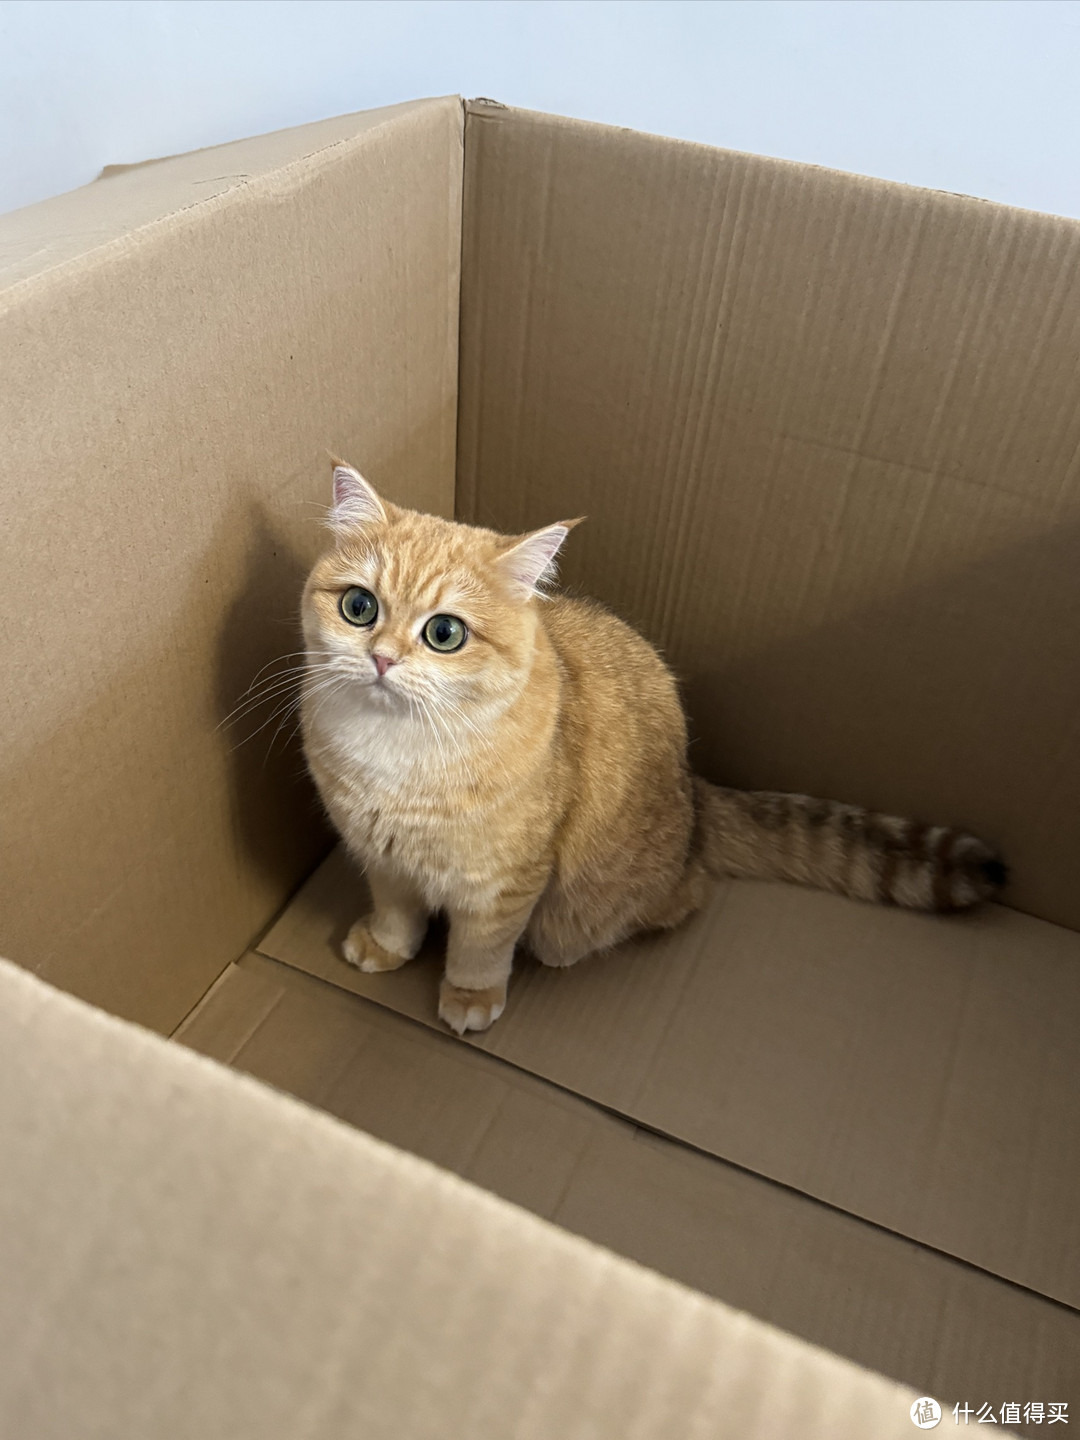 猫生这辈子没见过这么大的纸箱